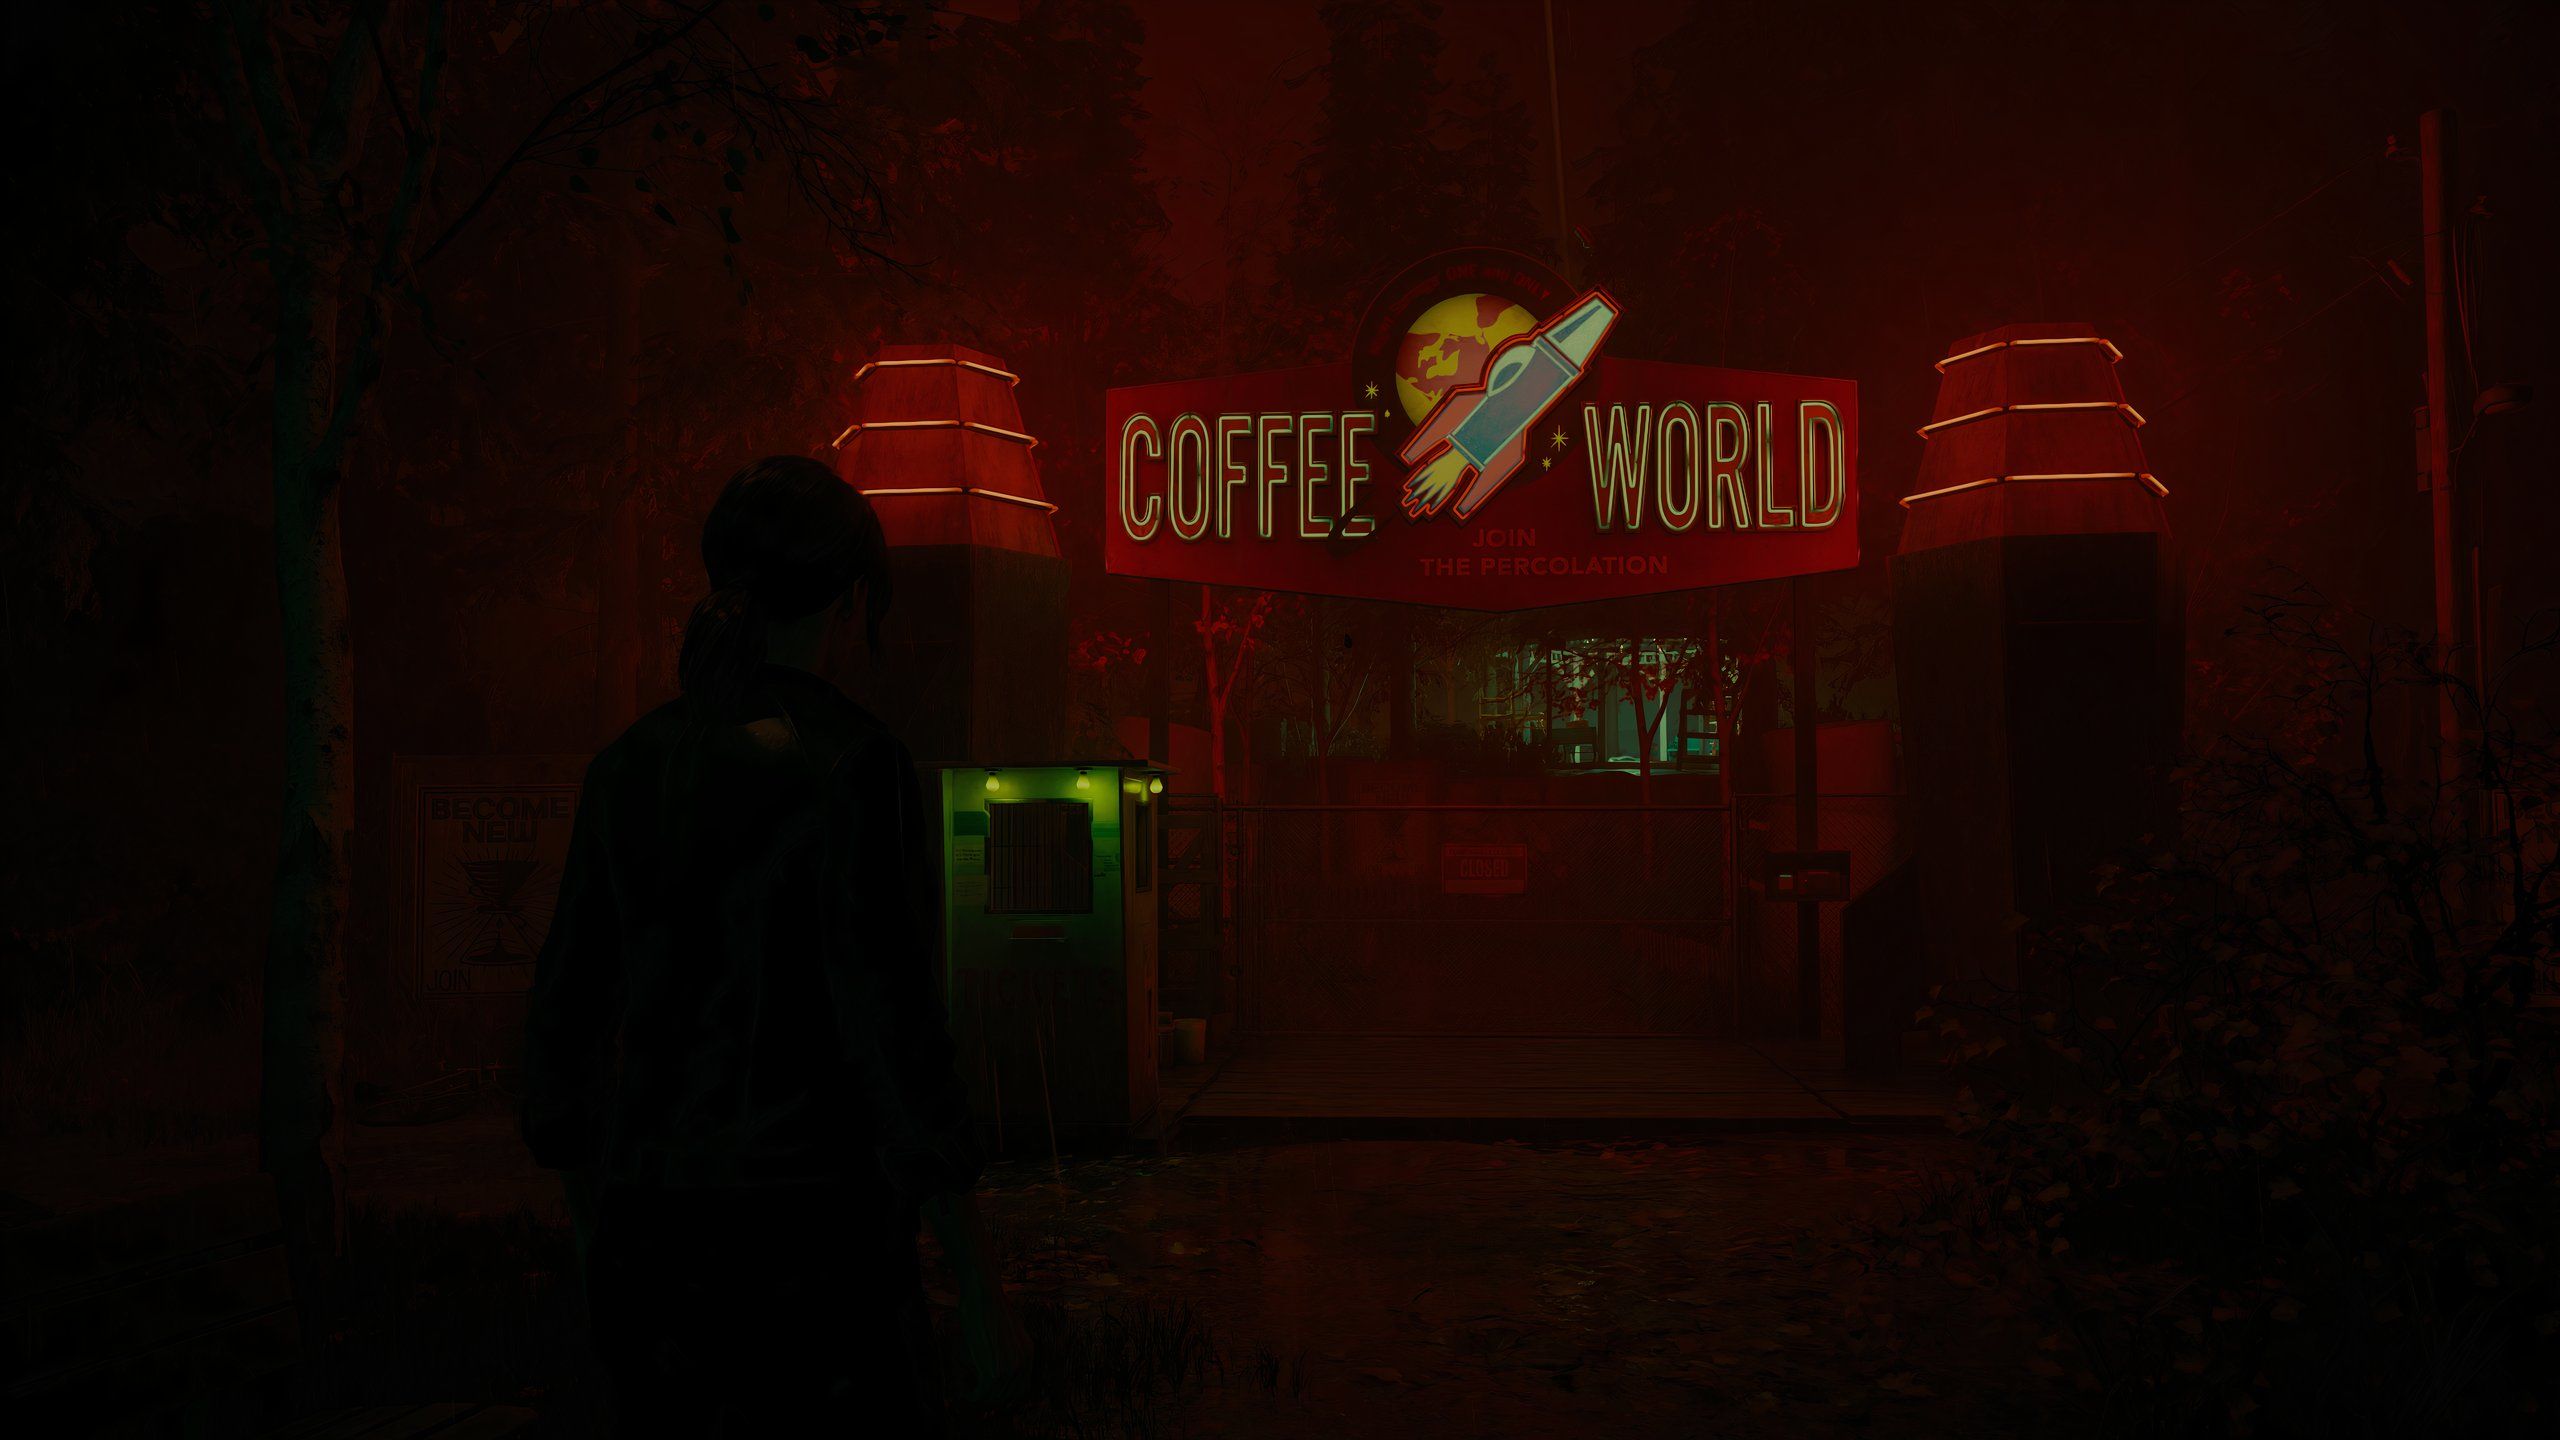 Jesse Faden parado nos portões do mundo do café em Alan Wake 2 Night Springs DLC, episódio 2